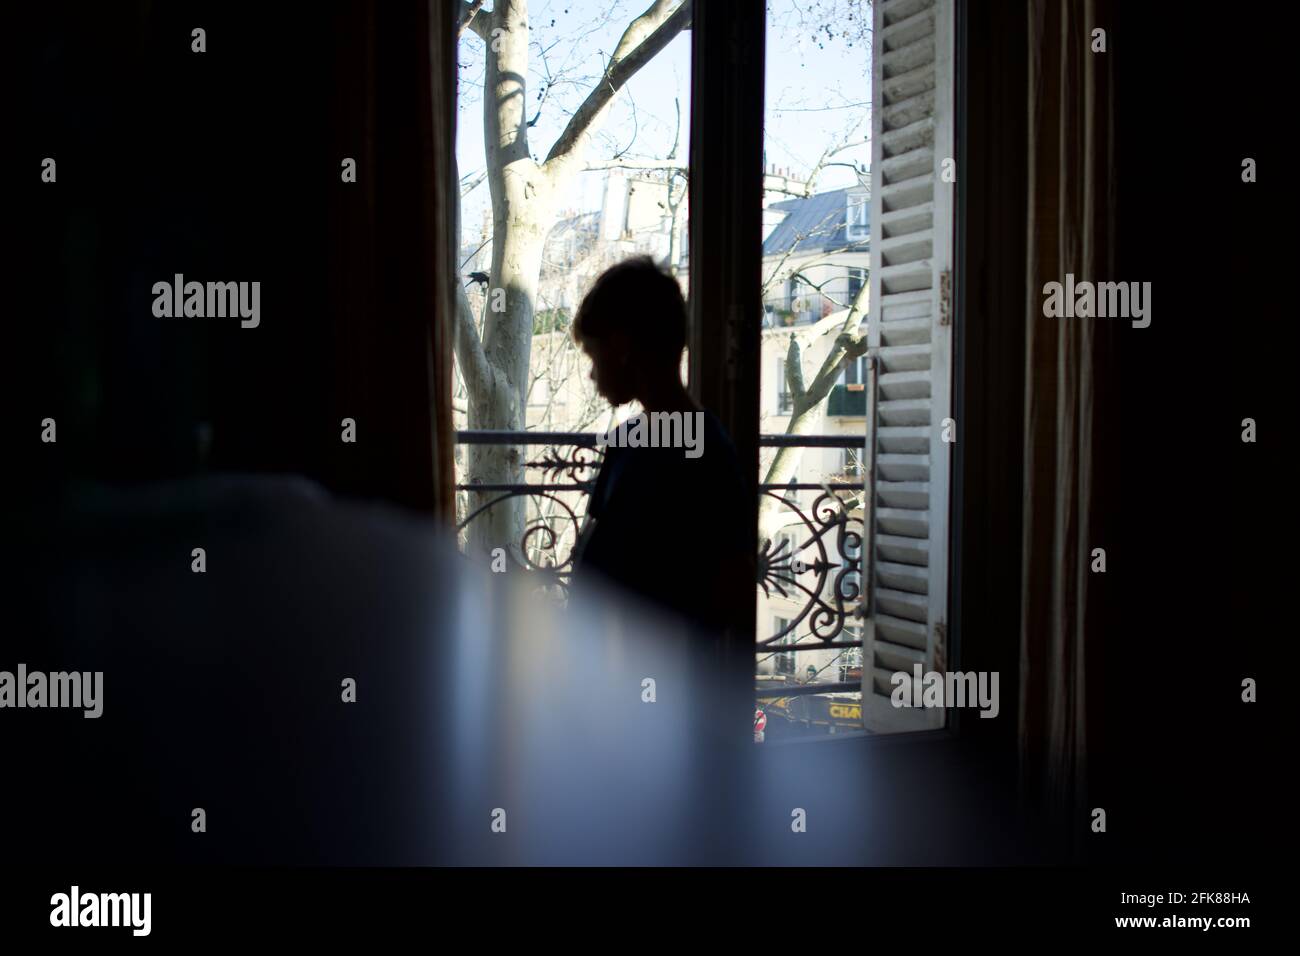 Enfant debout, silhoueté, regardant par la fenêtre, en profil, vulnérable, seul - avril 2021 confinement, Paris, France Banque D'Images